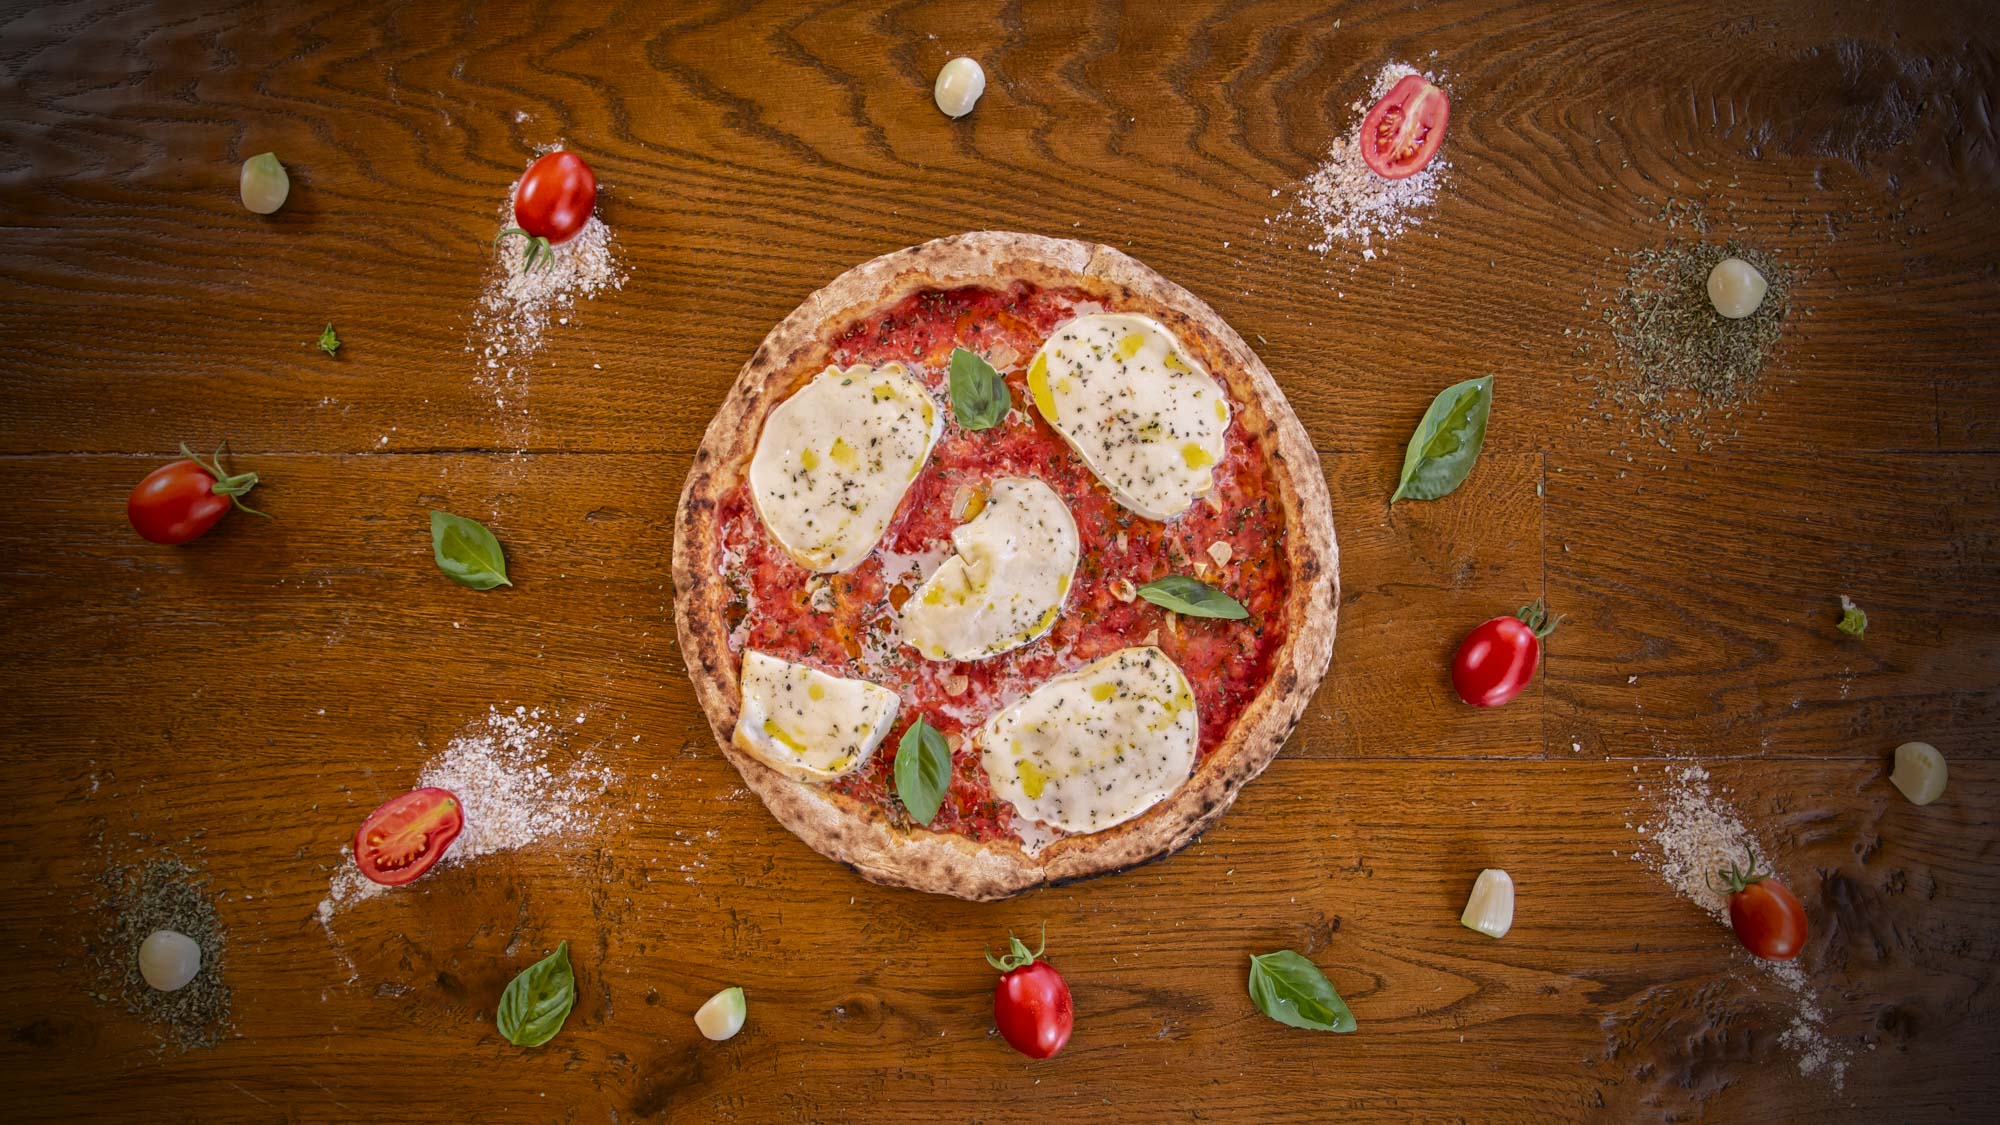 ASSOCIAZIONE PIZZA TRAMONTI: “Intervenire subito, Made in Italy a rischio”